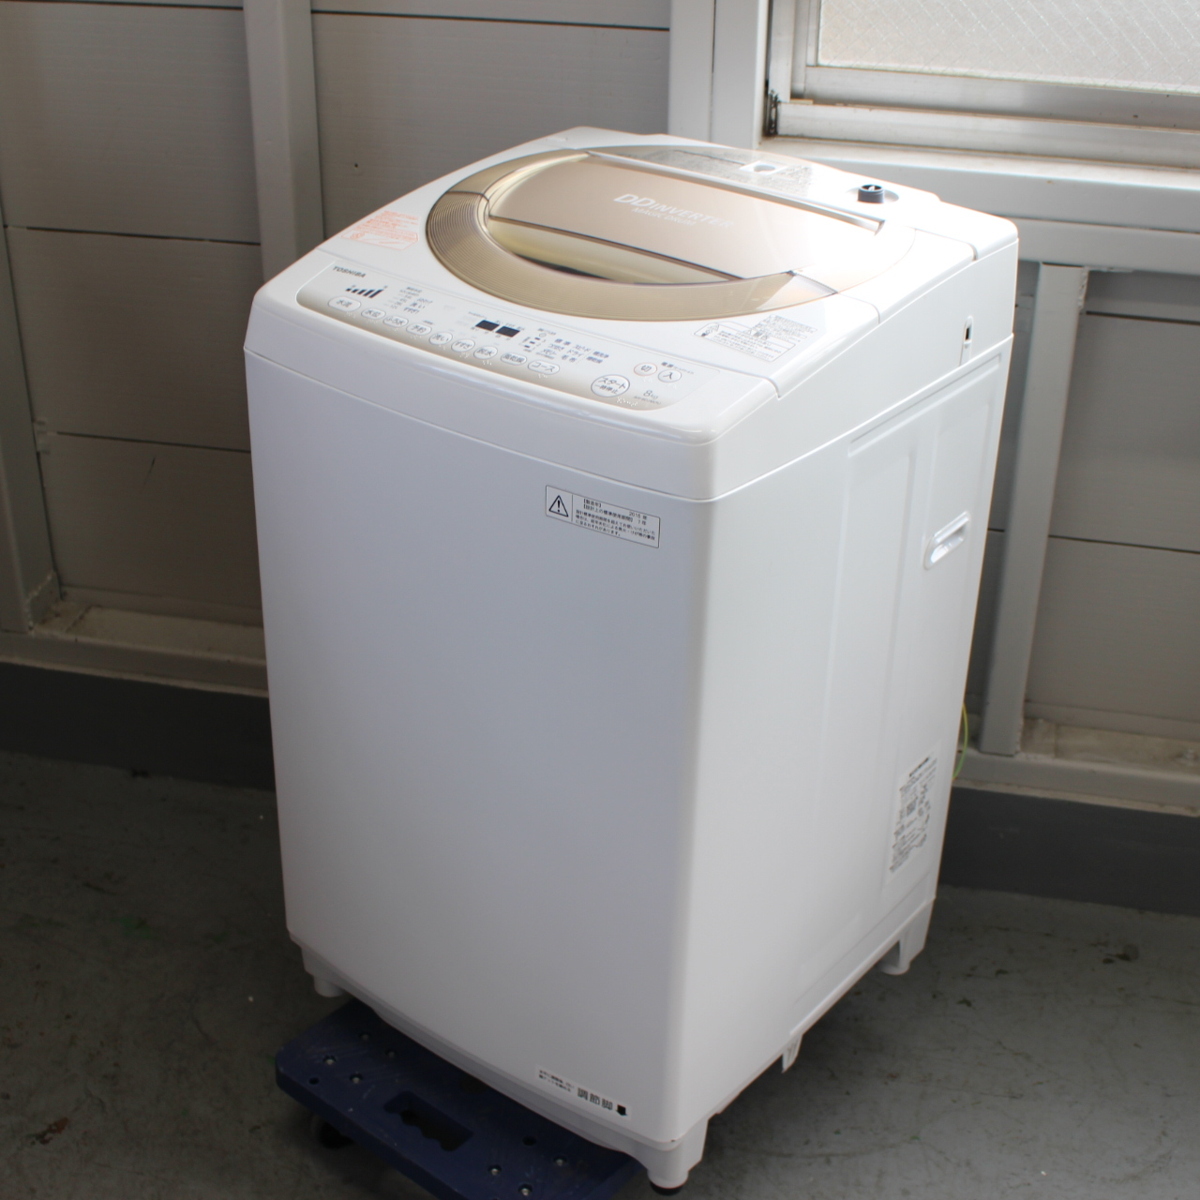 東芝 全自動洗濯機 AW-8D2M 8kg マジックドラム 縦型洗濯機 2015年製